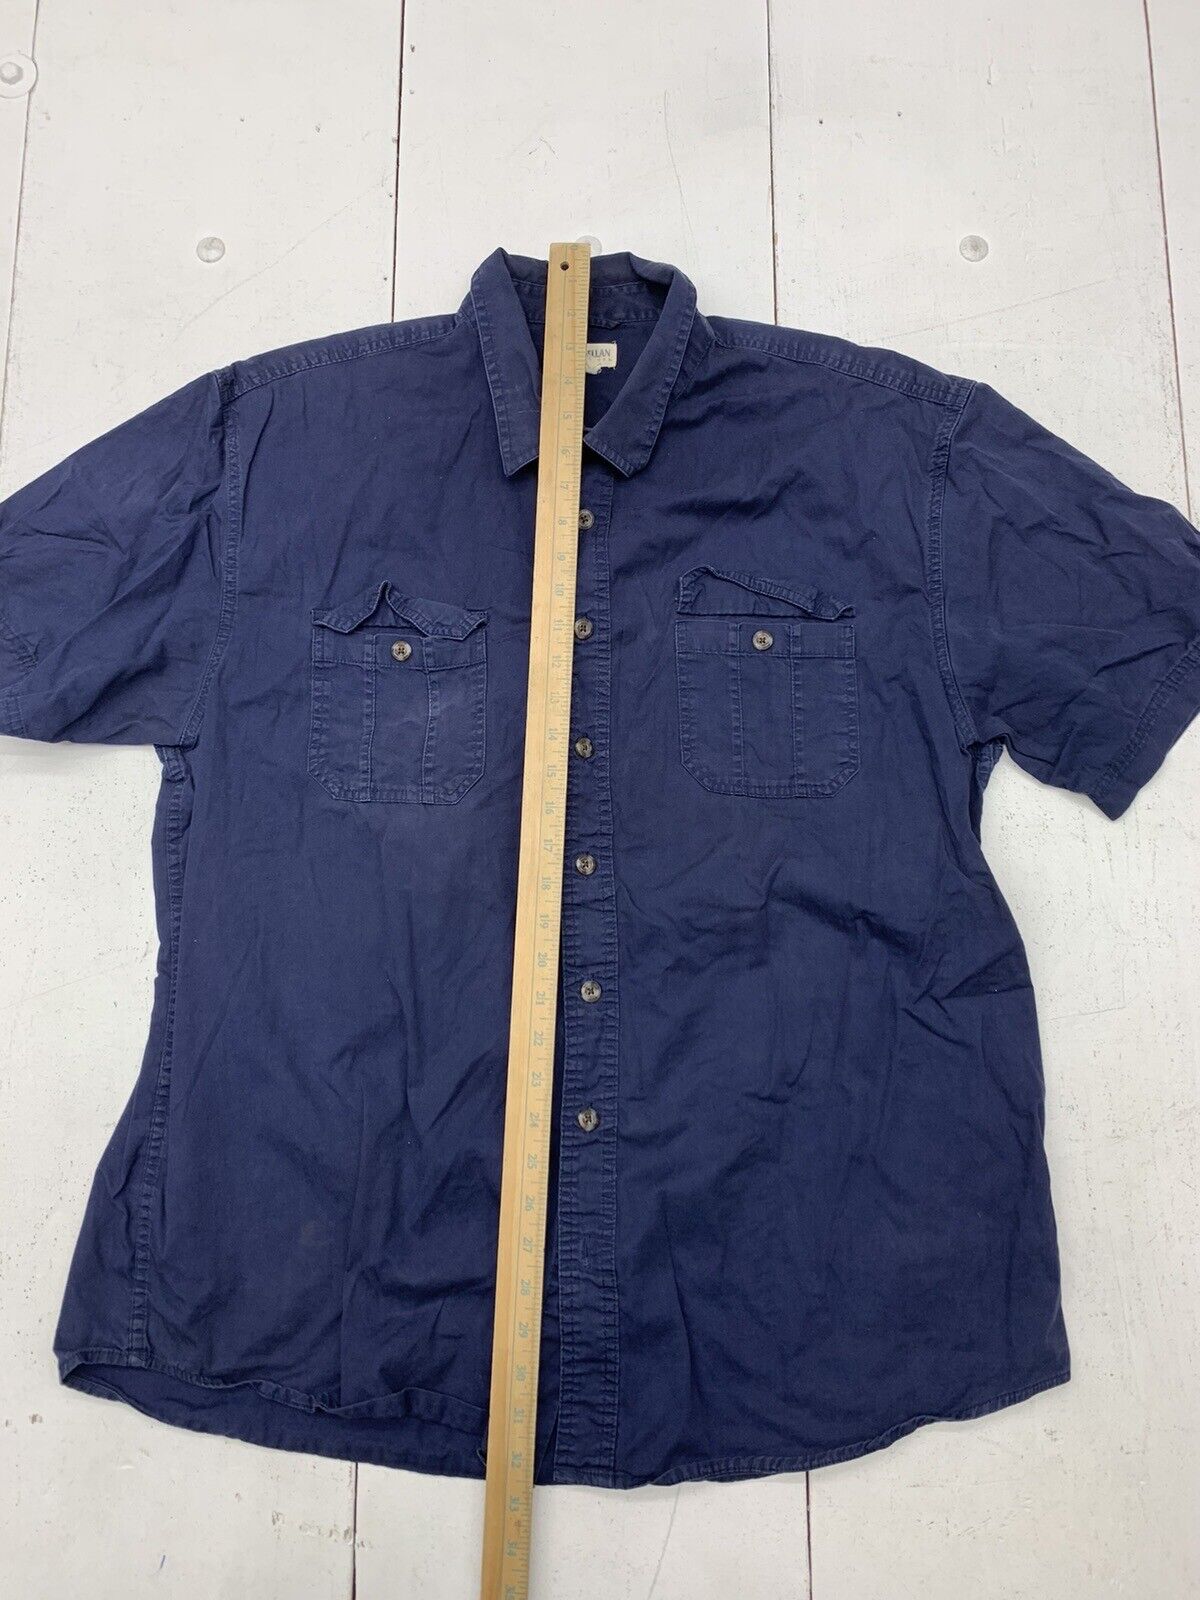 Magellan Outdoor Blue Plaid Long Sleeve Button Up Shirt Men Size XL